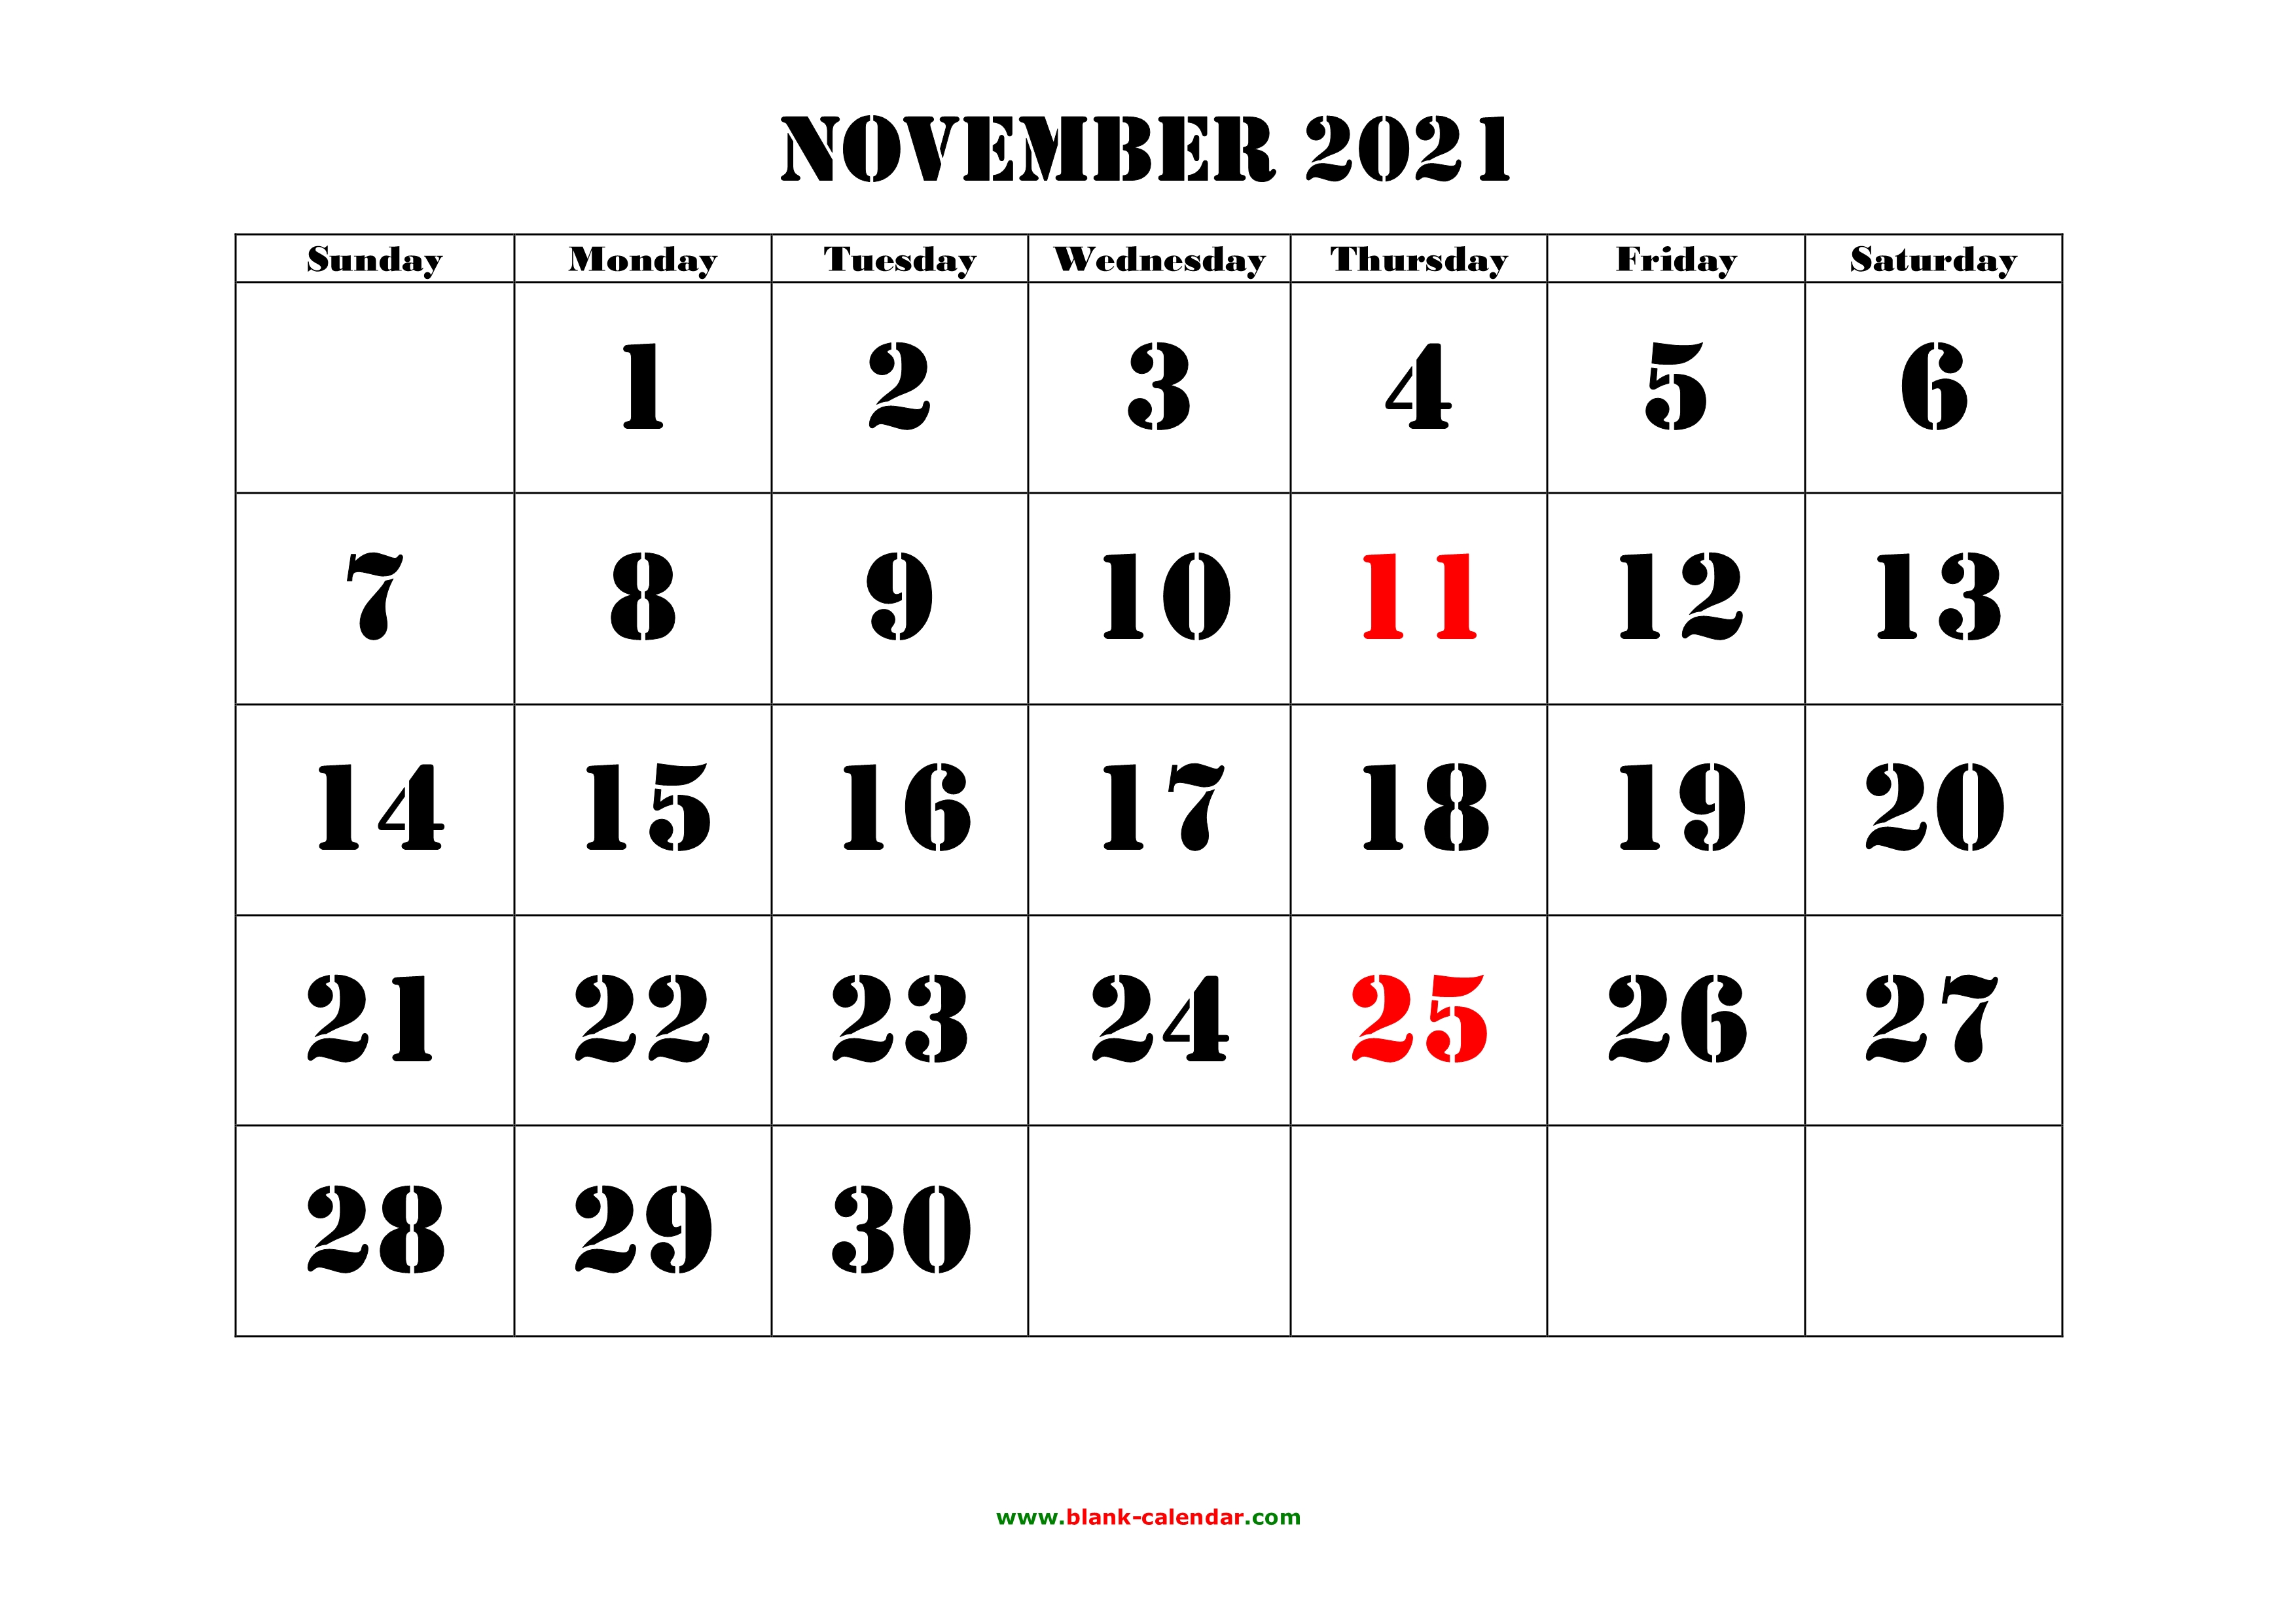 nov 2021 calendar with holidays Free Download Printable November 2021 Calendar Large Font Design Holidays On Red nov 2021 calendar with holidays